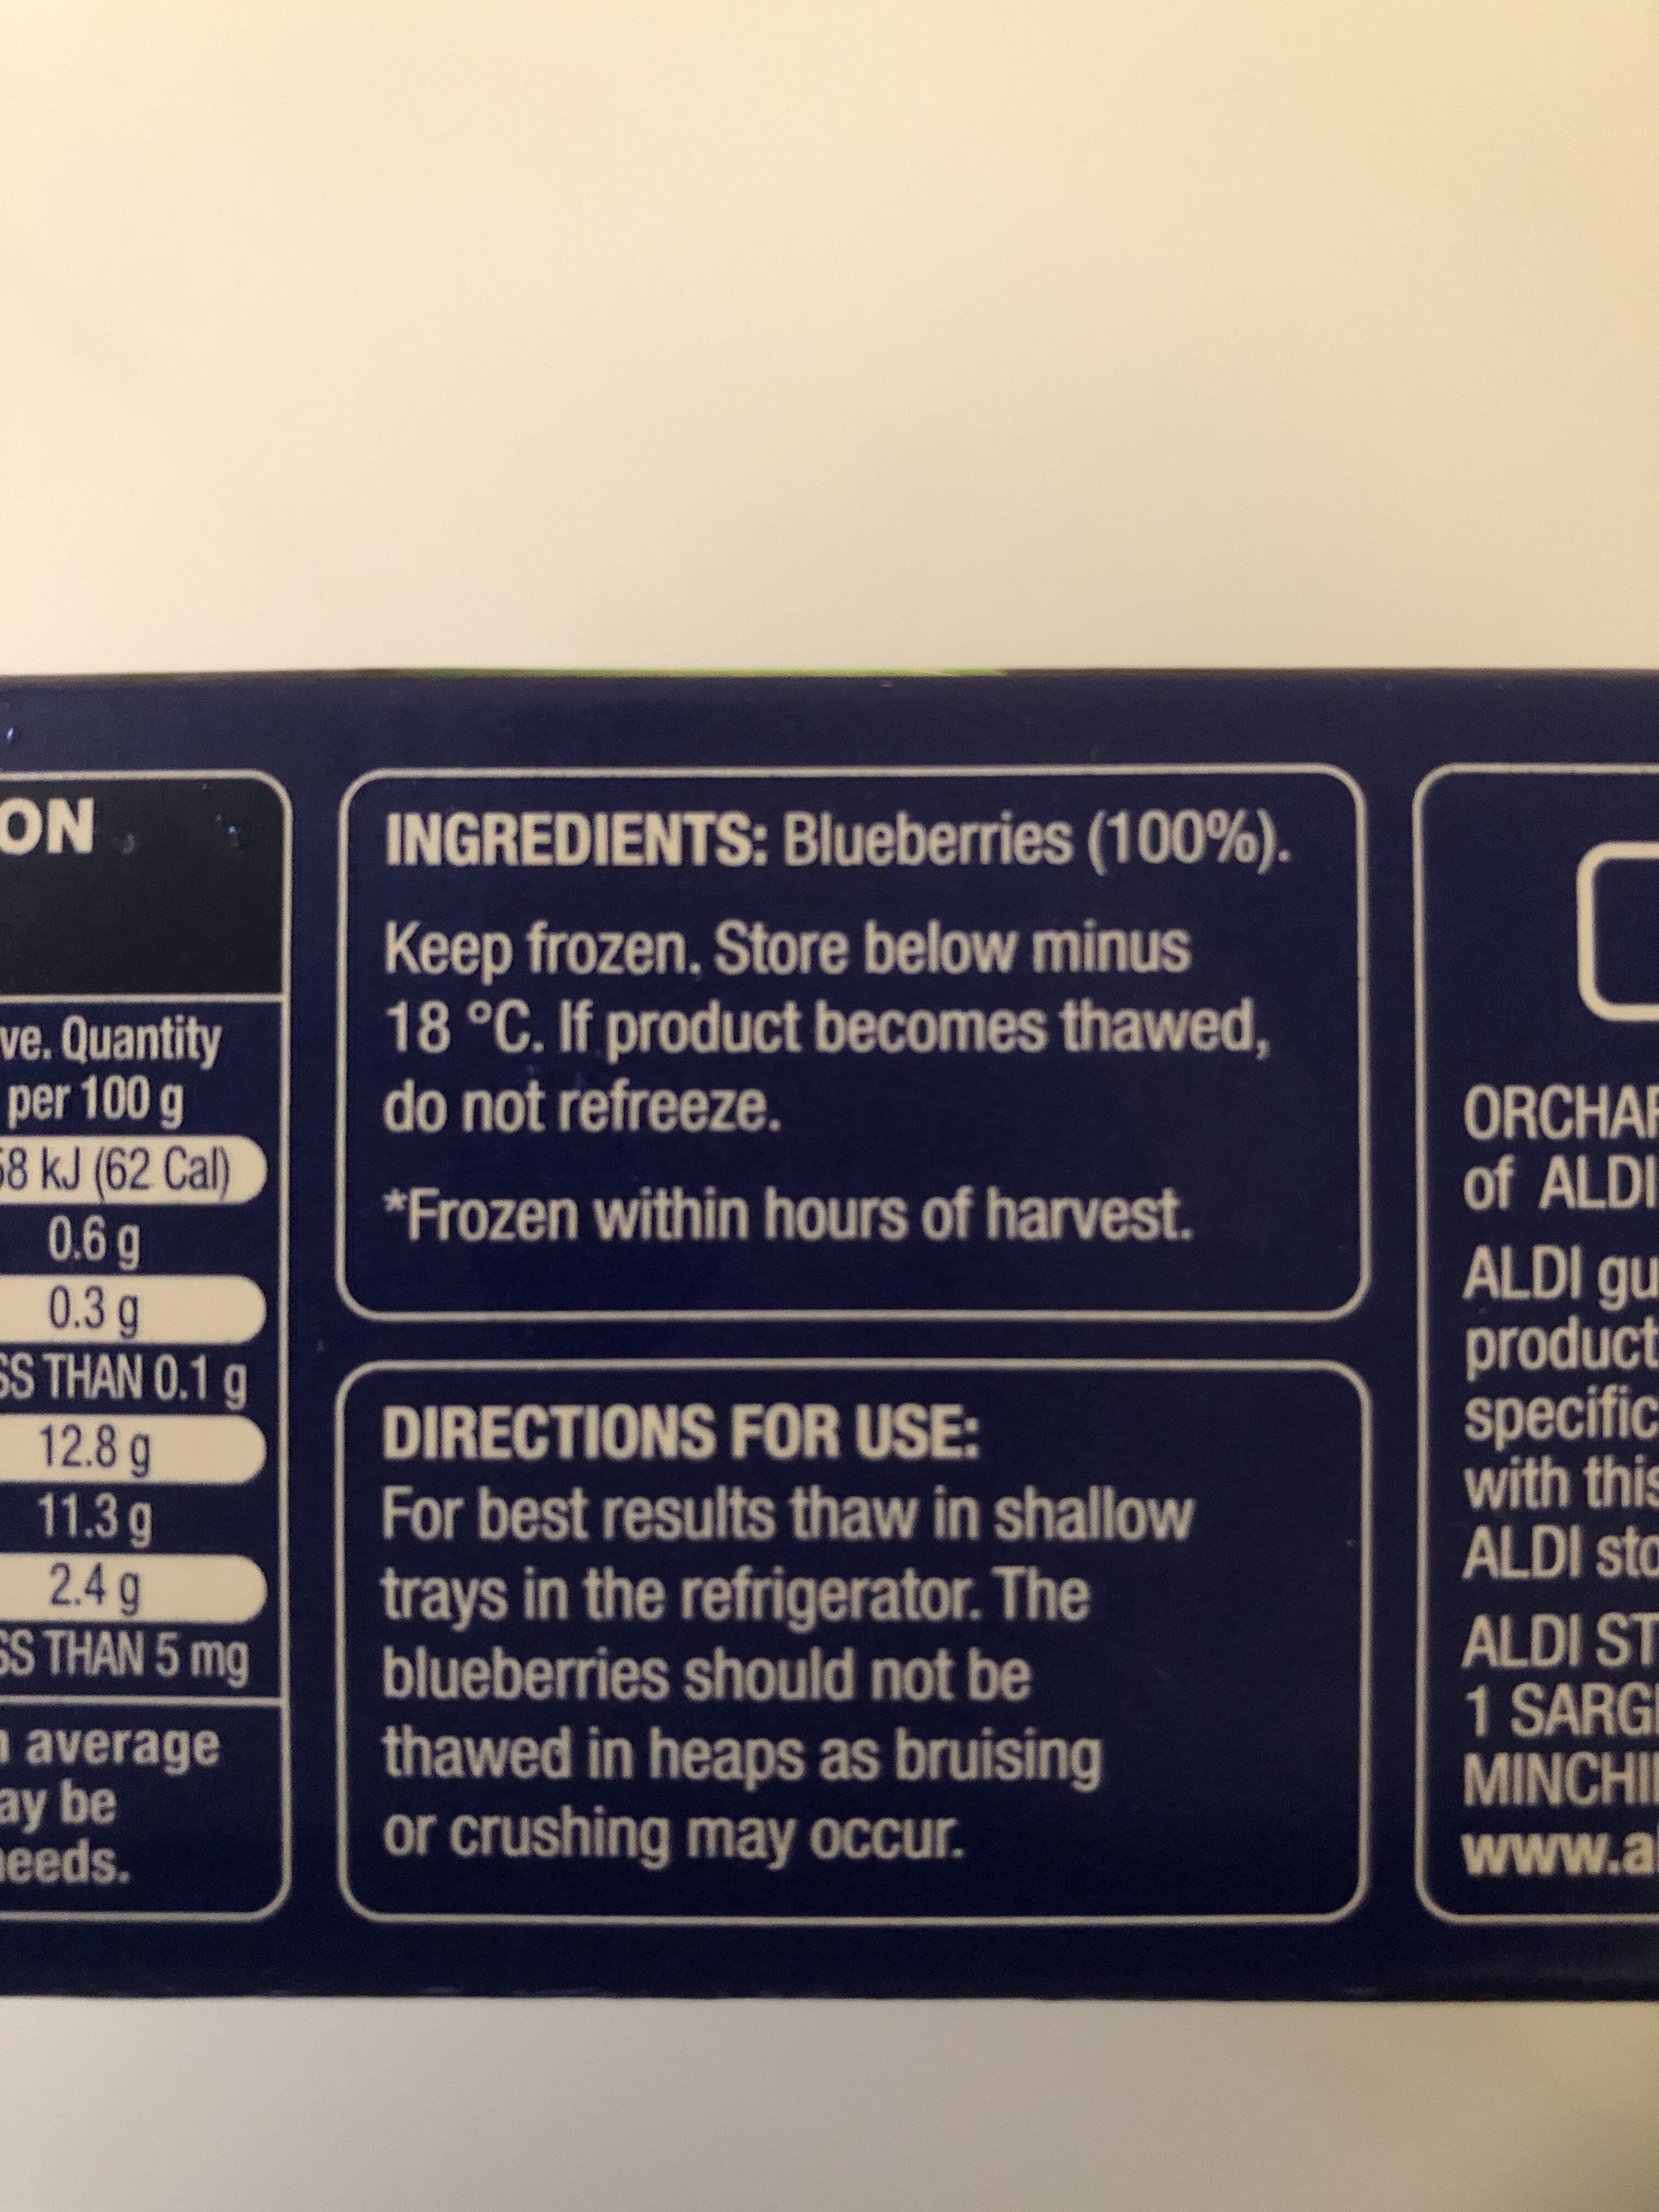 Aldi Orchard & Vine Blueberries - Ingredients